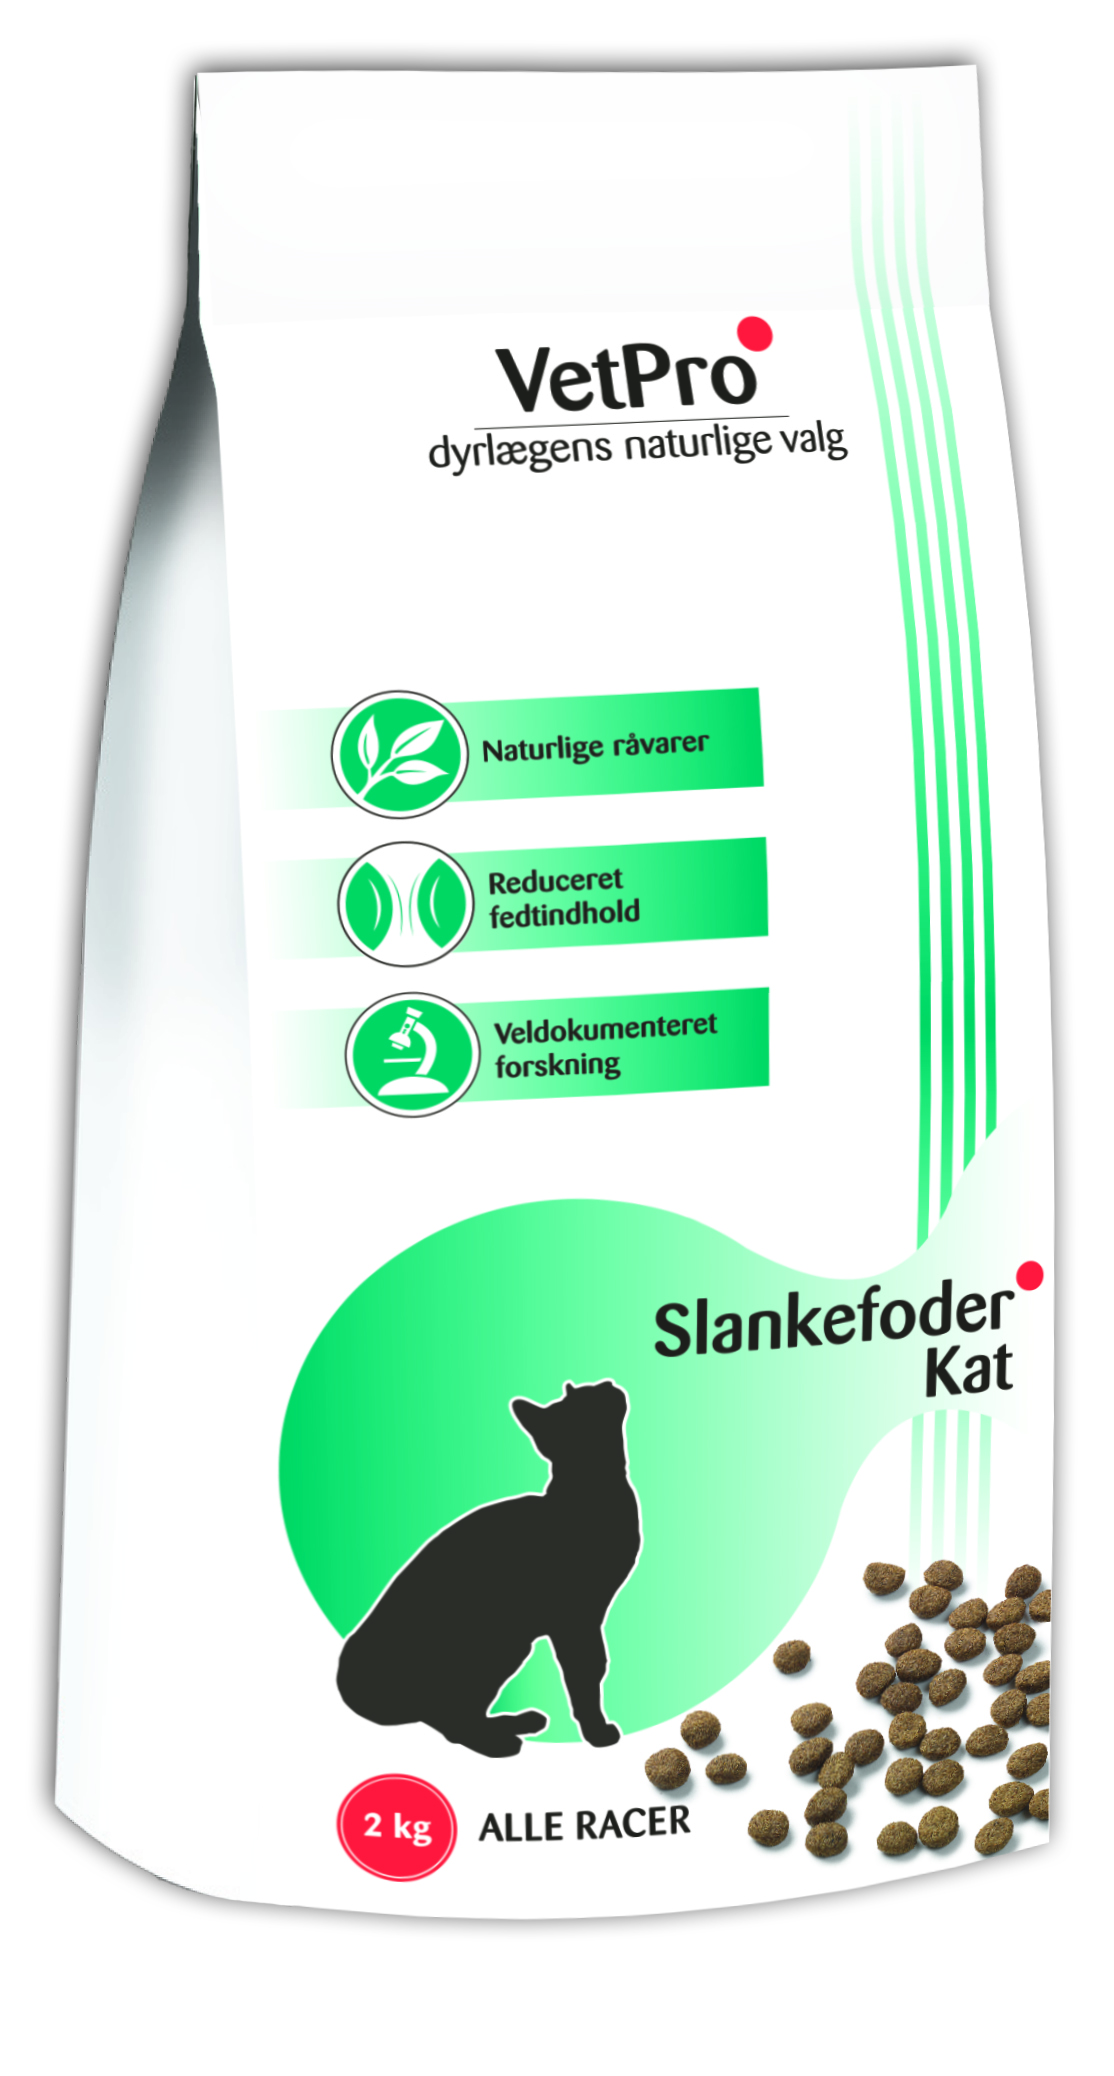 visuel Nikke foretrækkes VF VetPro slankefoder kat 4 x 2 kg